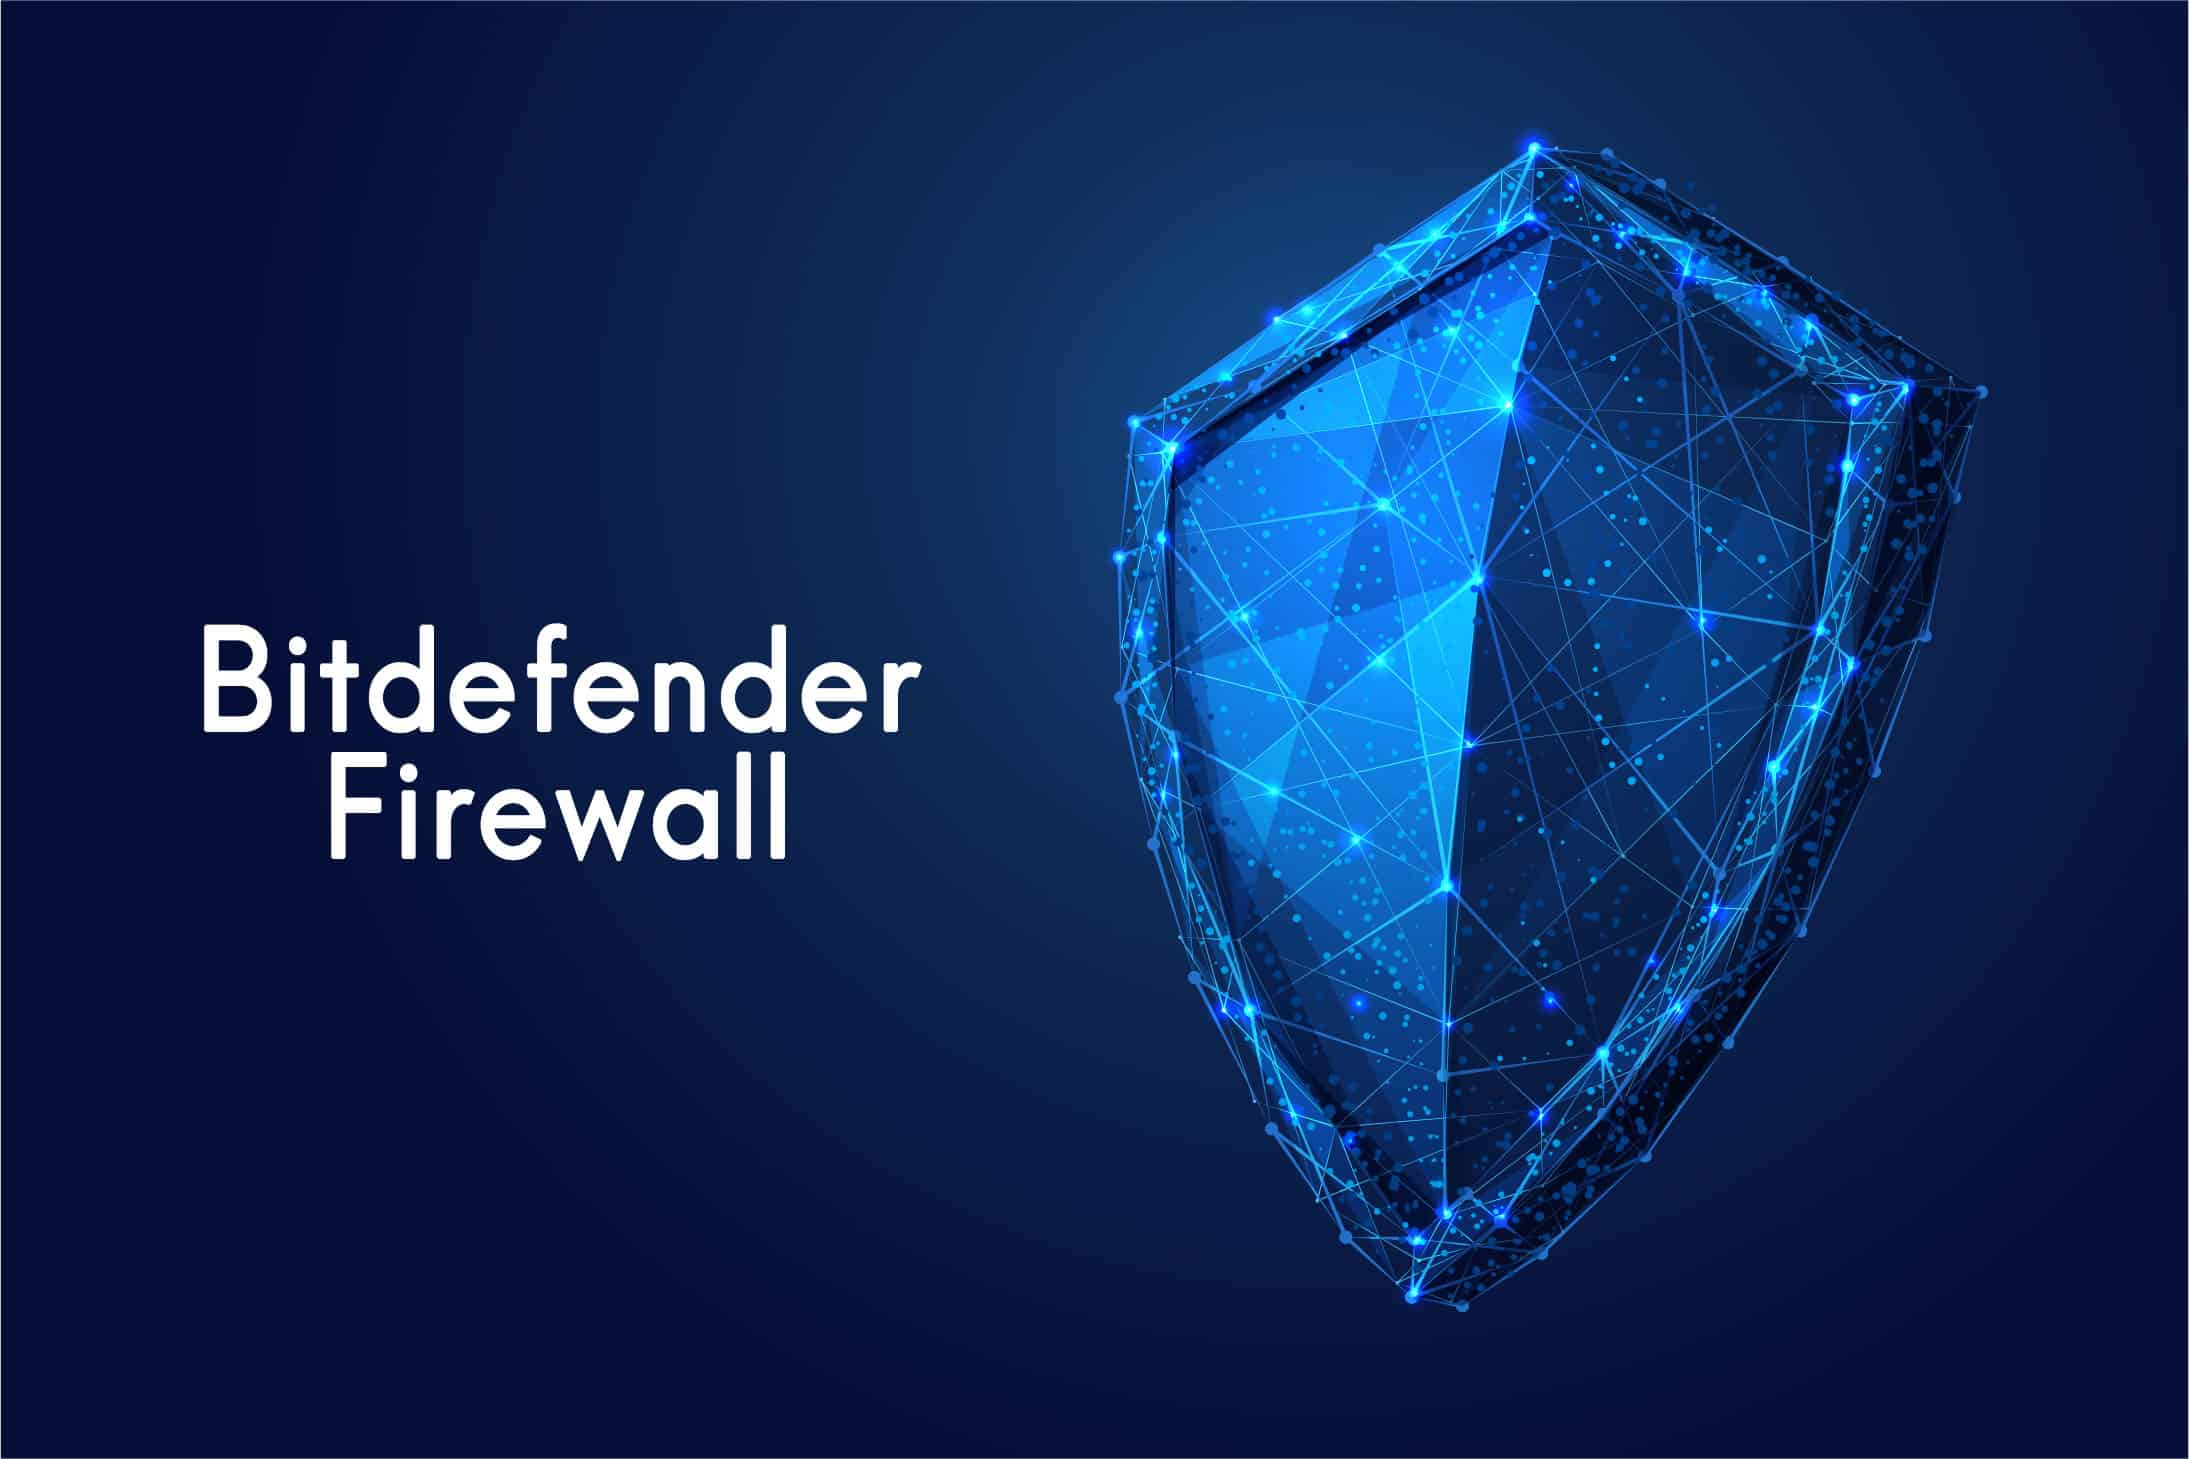 يعد جدار حماية بت دیفندر أقوى ترسانة أمان لسلامة اتصالك بالإنترنت والملفات الشخصية ضد التهديدات عبر الإنترنت.